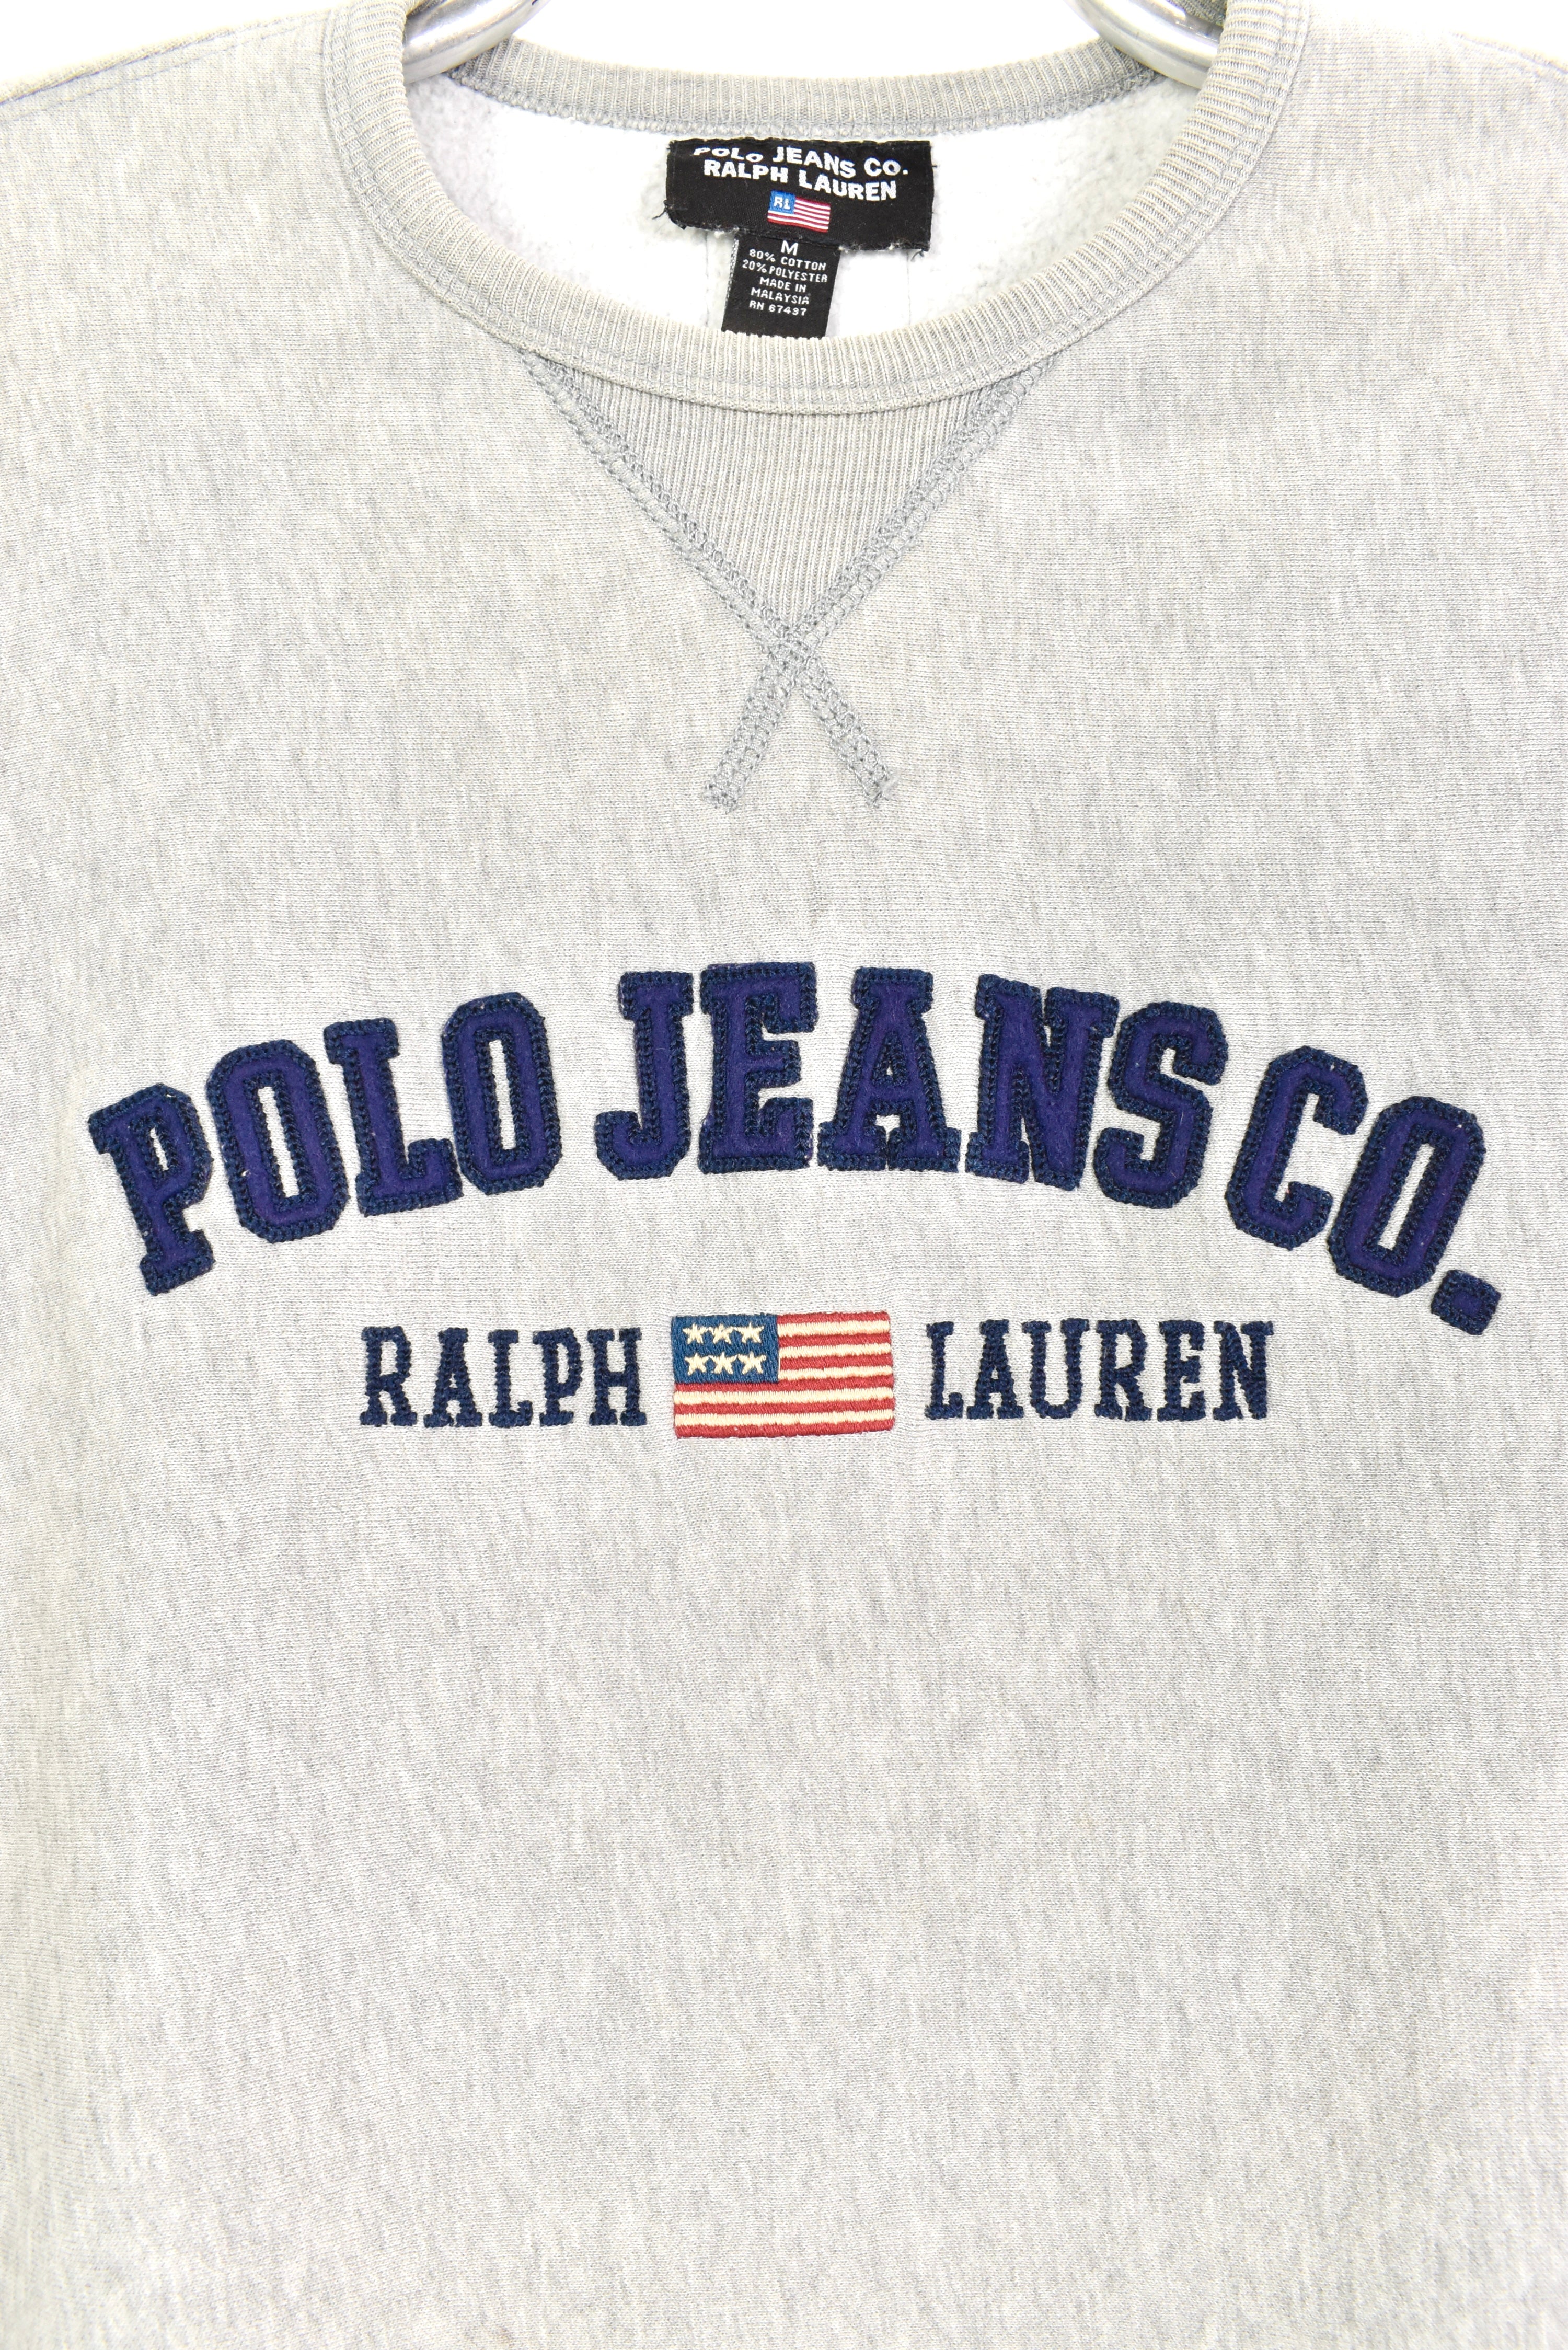 Vintage Ralph Lauren embroidered grey sweatshirt | Large RALPH LAUREN